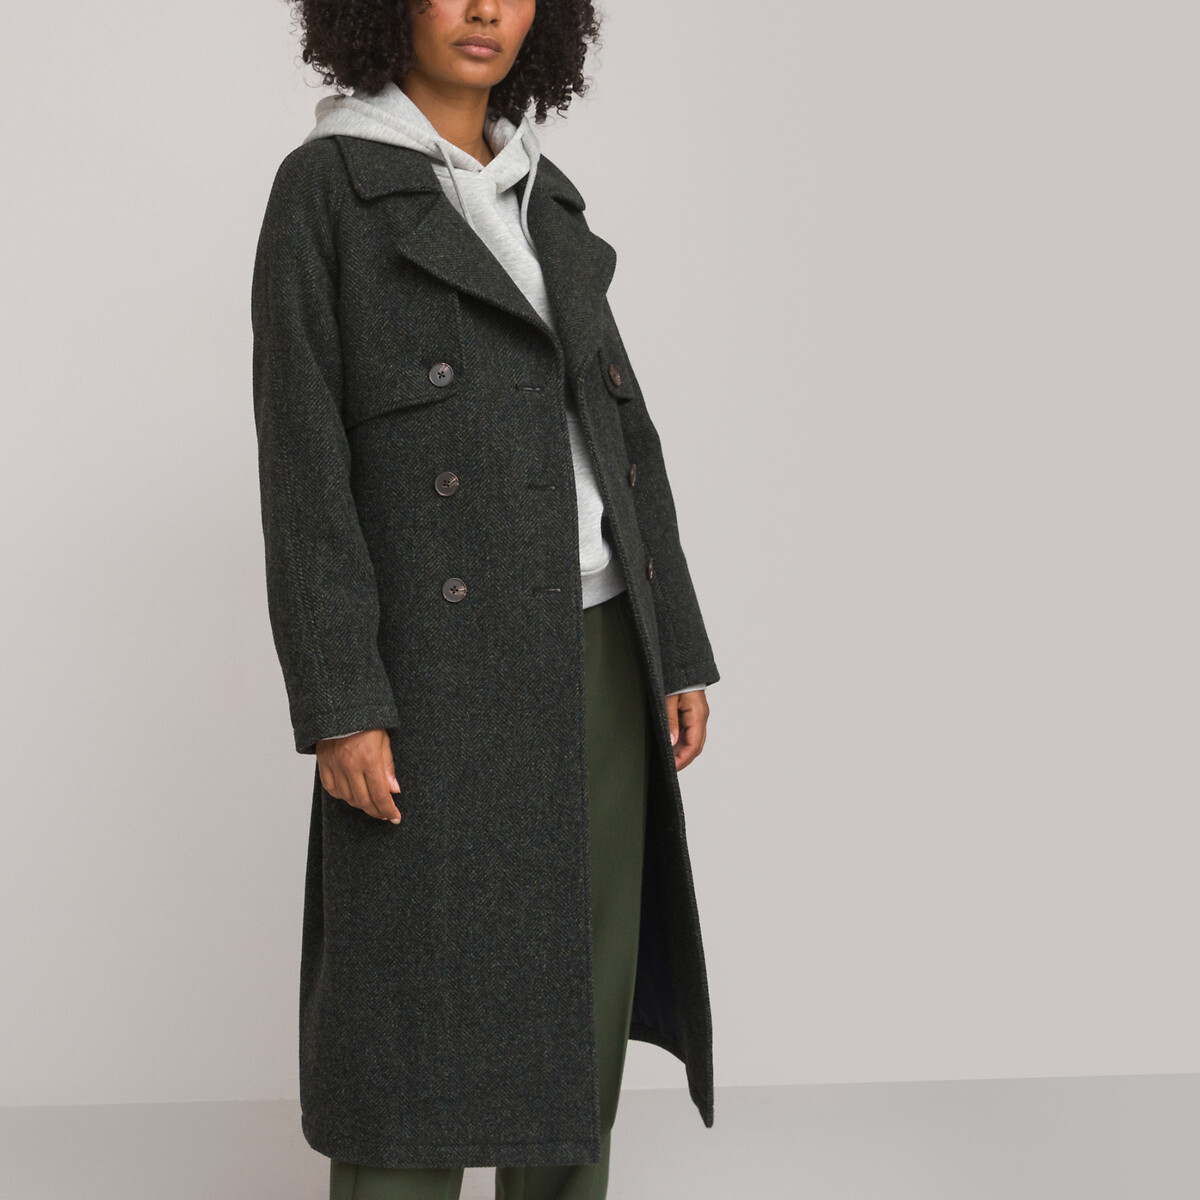 Пальто длинное из шерстяного драпа в ломаную саржу 38 (FR) - 44 (RUS) зеленый пальто длинное прямое на пуговицах в клетку 38 fr 44 rus серый